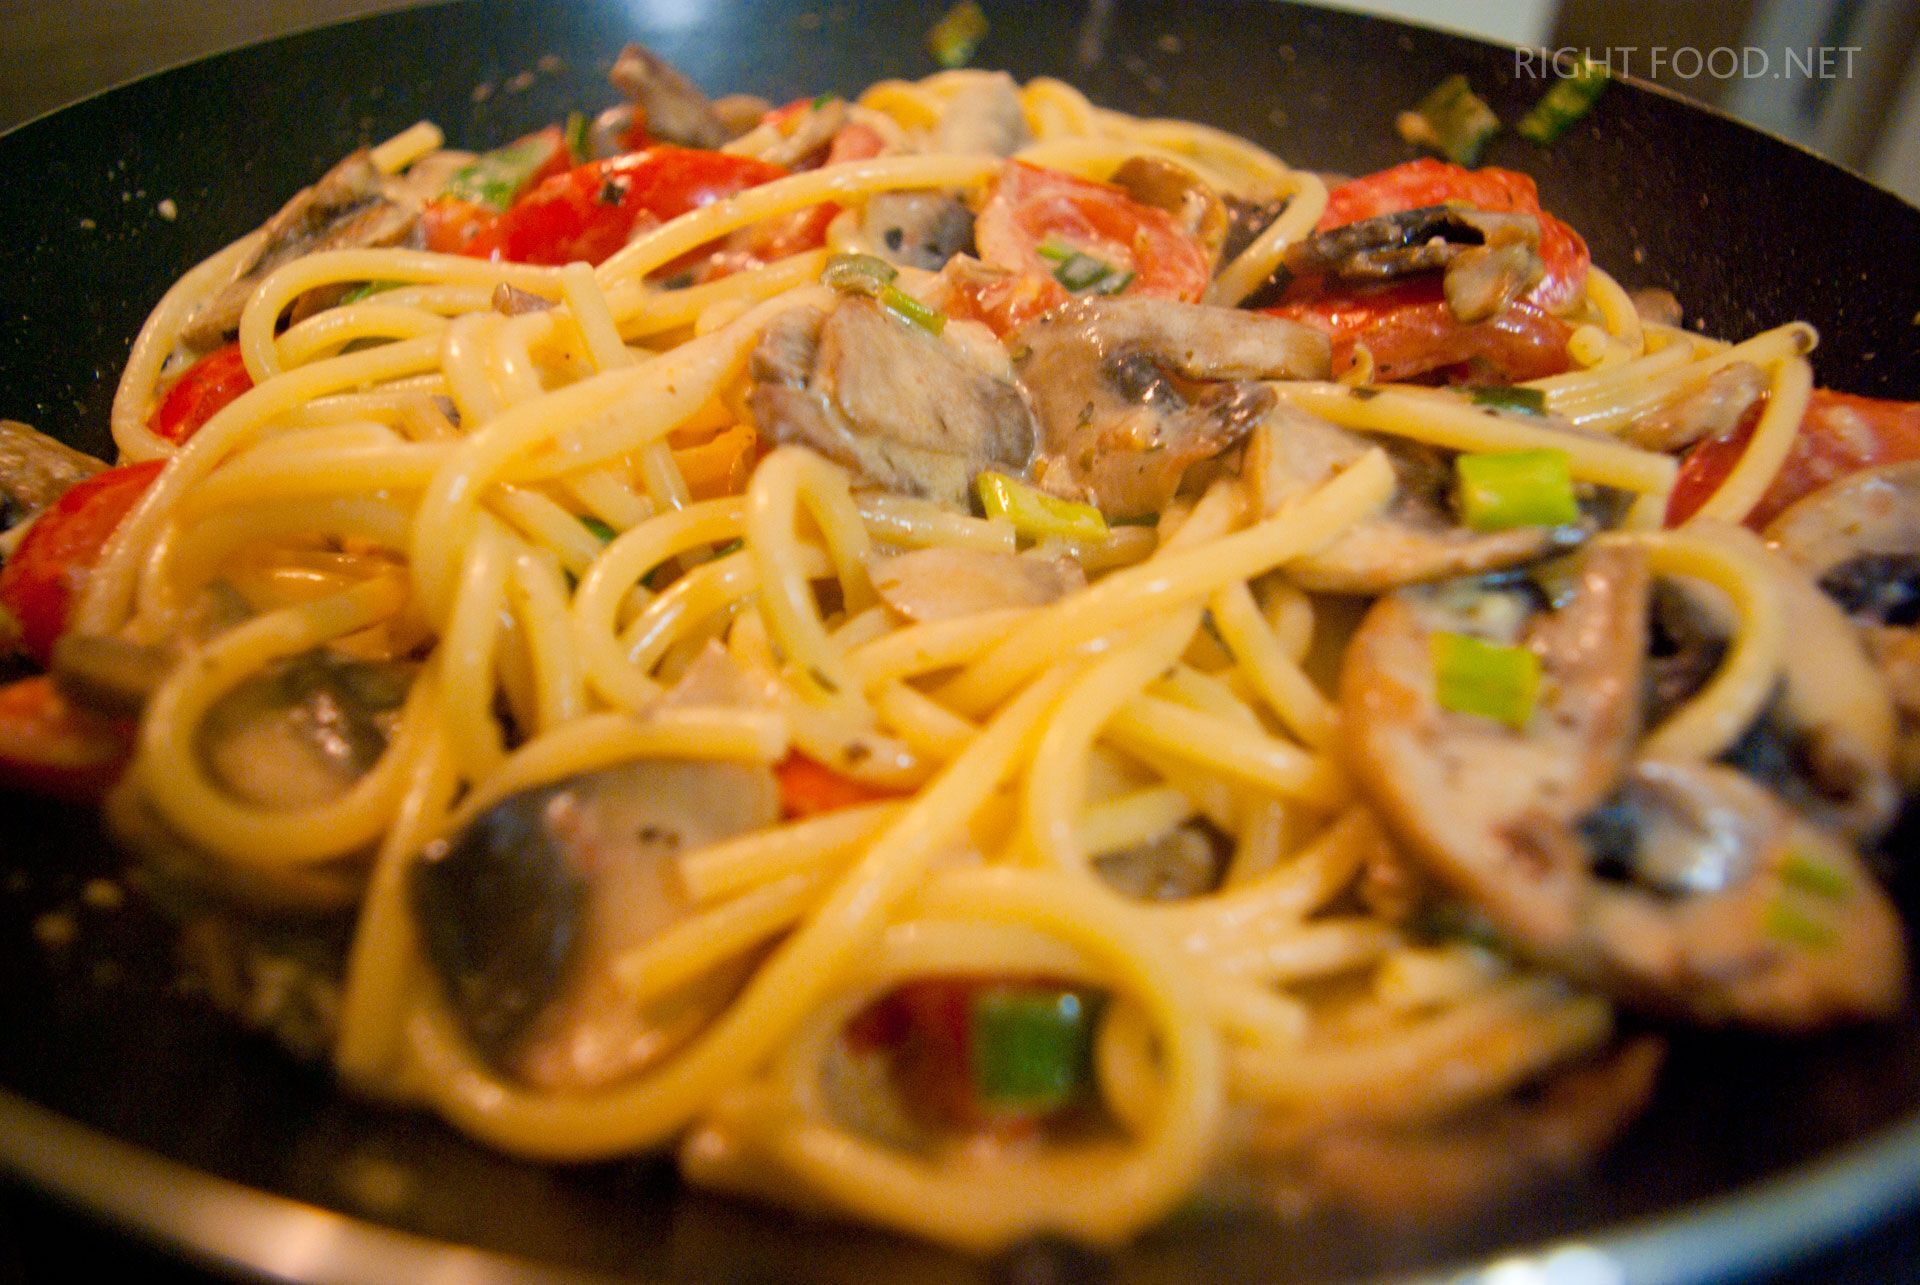 Спагетти с грибами и шпинатом подают, посыпав тертым сыром и кольцами красного перца чили